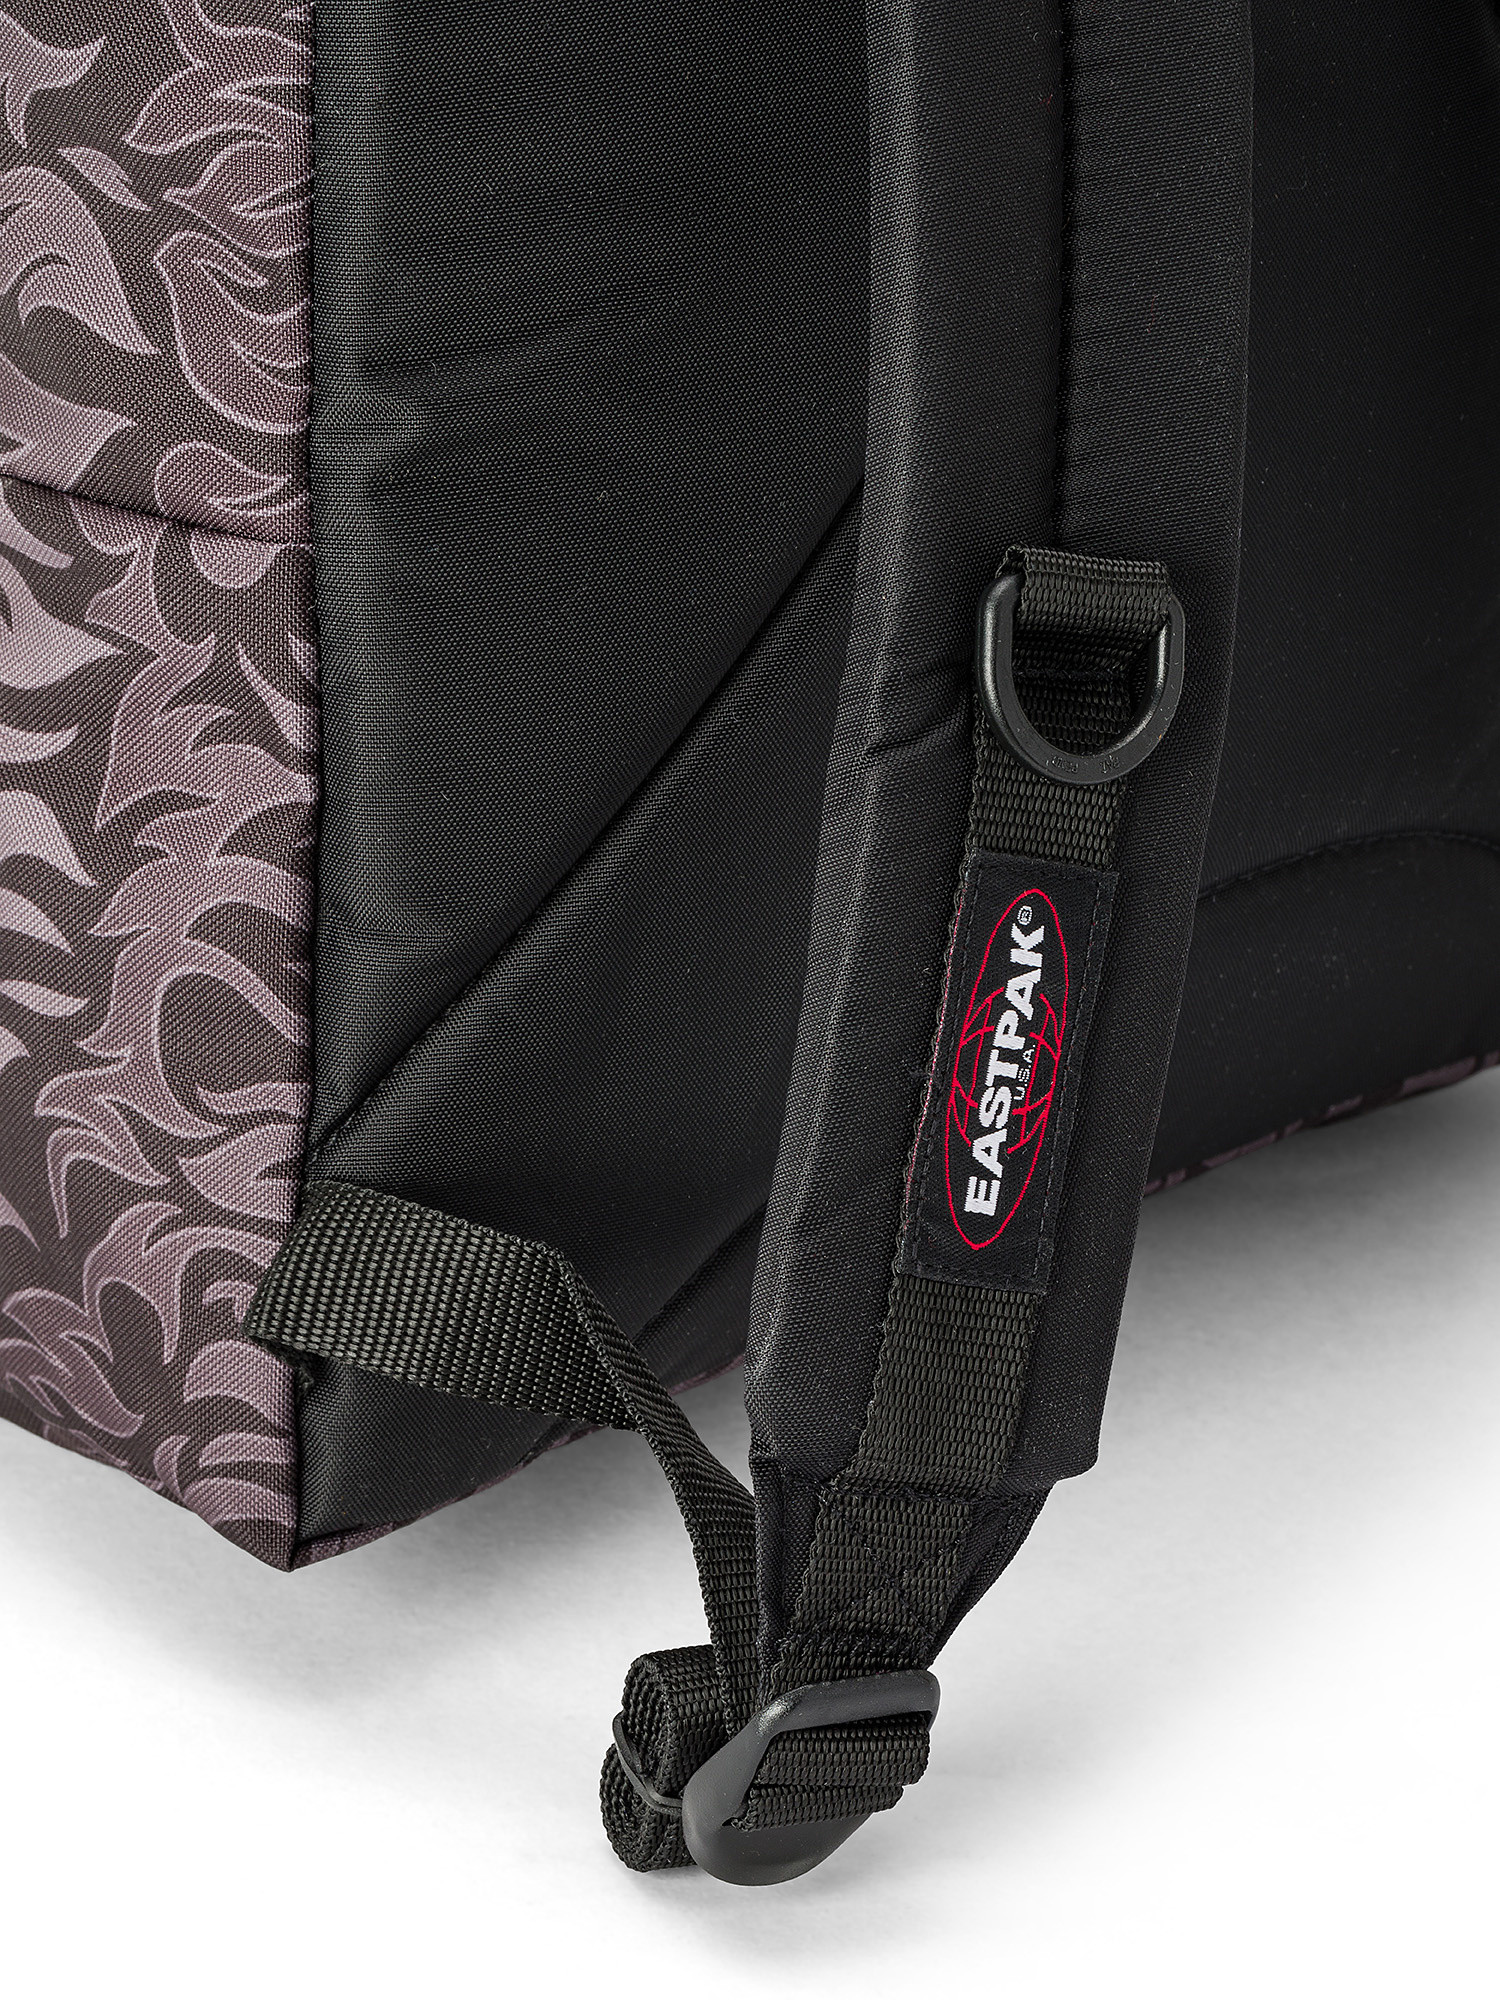 Eastpak - Pinnacle Skate Flames backpack, Black, large image number 2